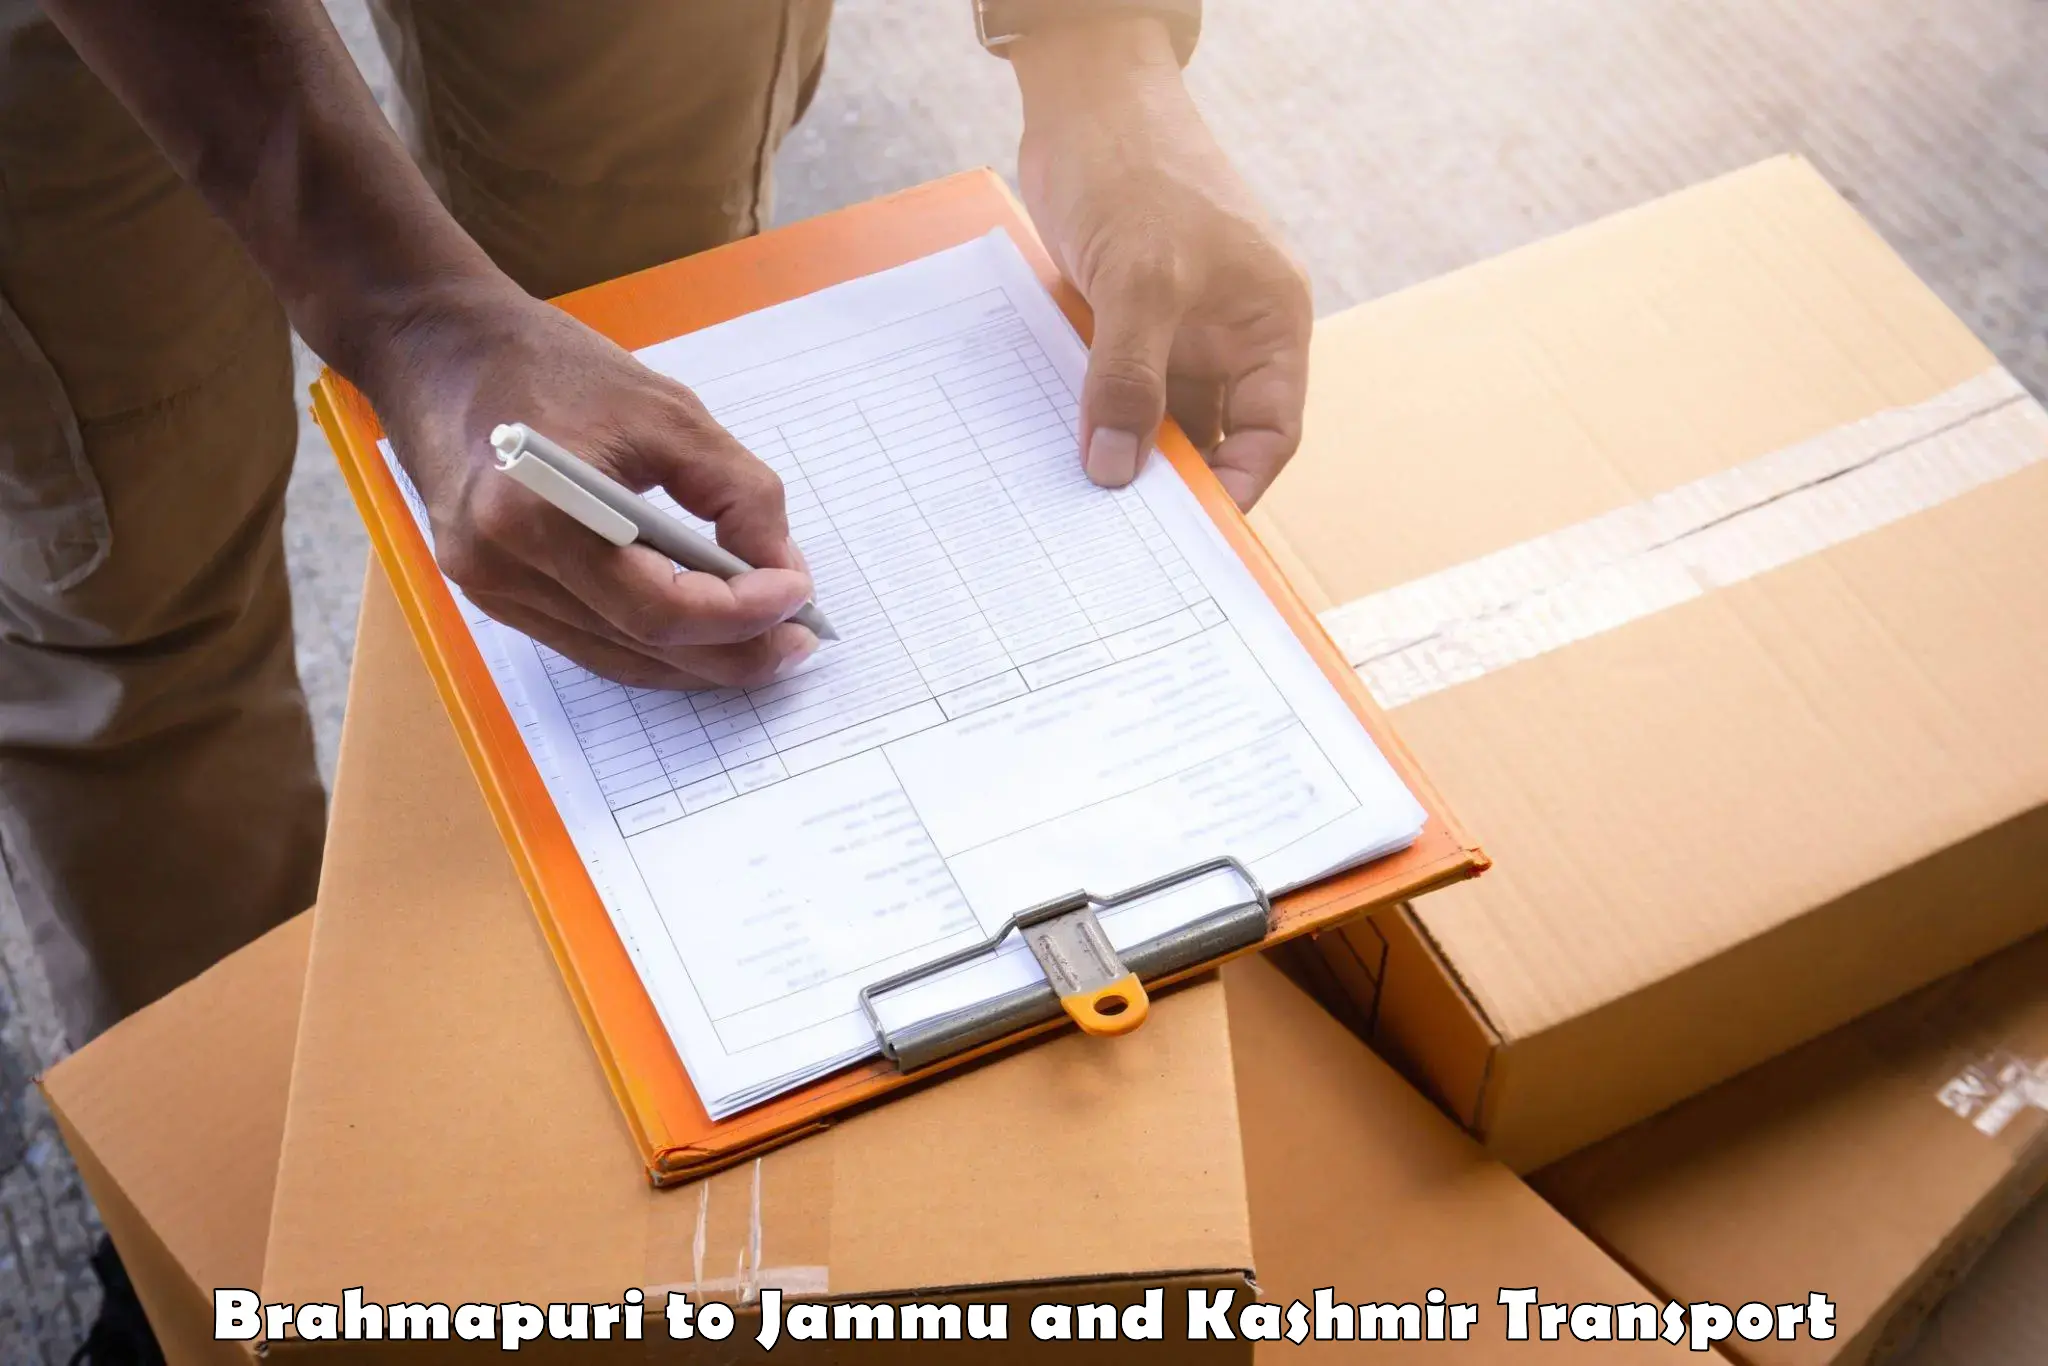 Shipping partner Brahmapuri to Reasi